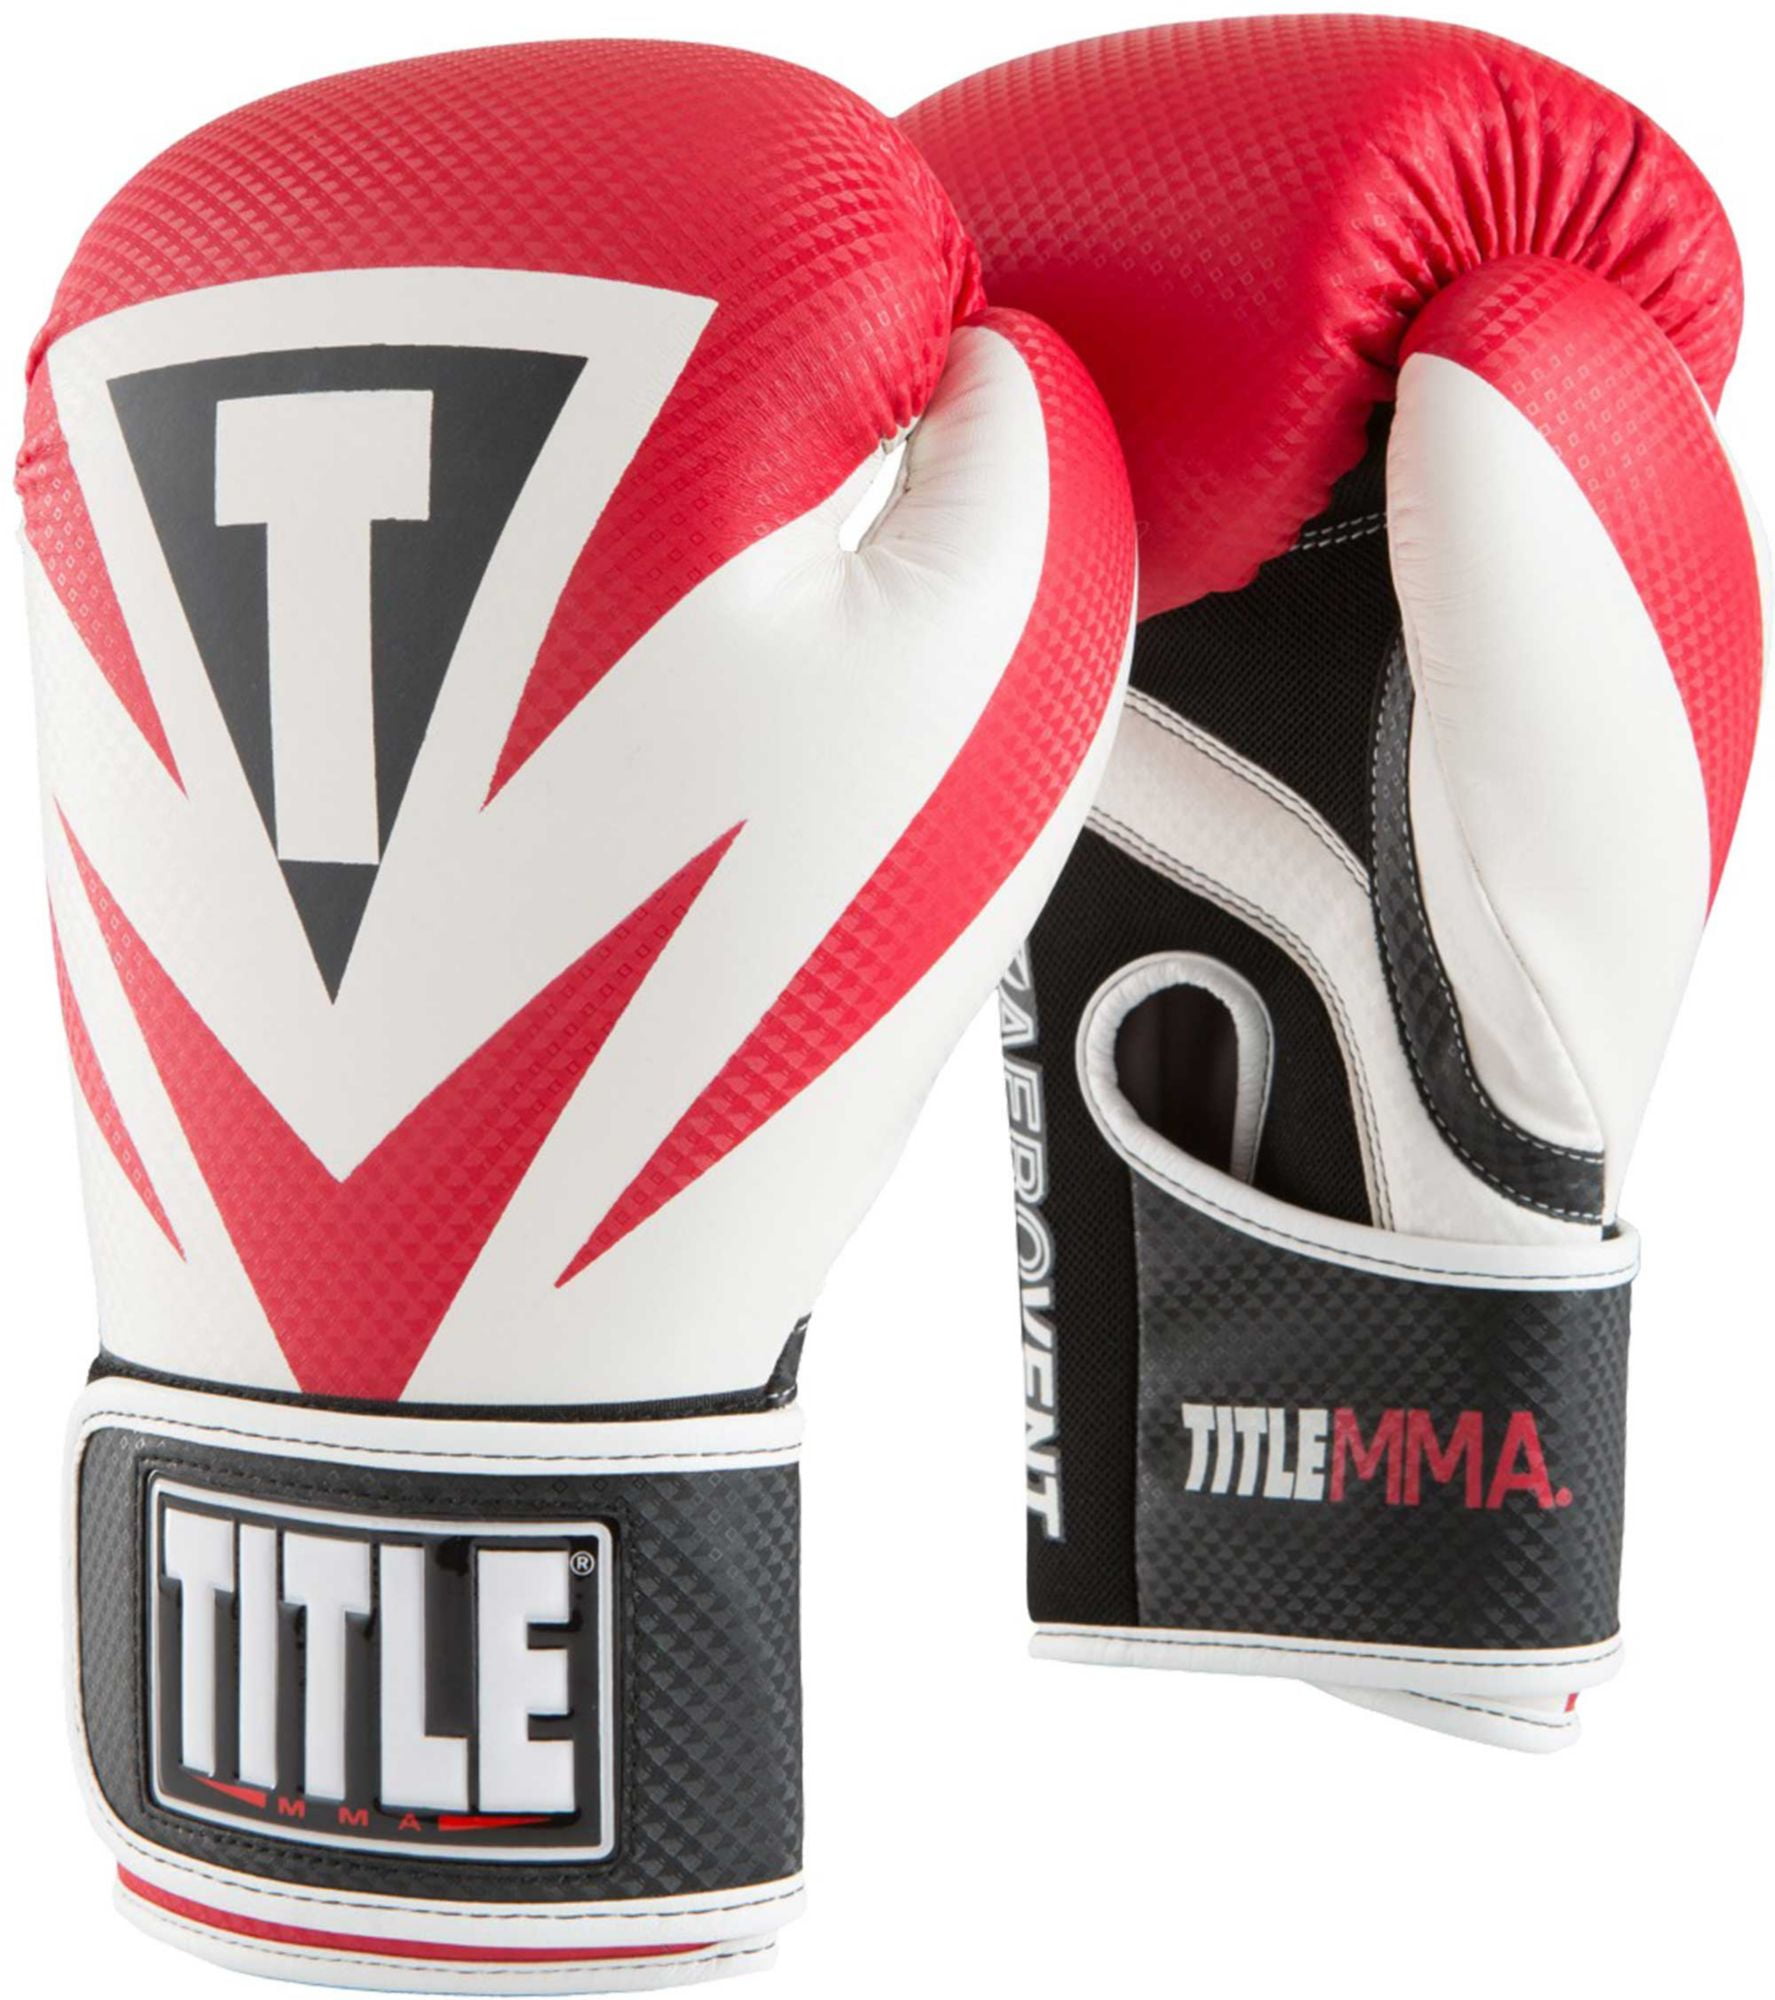 Title MMA перчатки. Перчатки ММА тренировочные. Перчатки для бокса title. Американские боксерские перчатки.